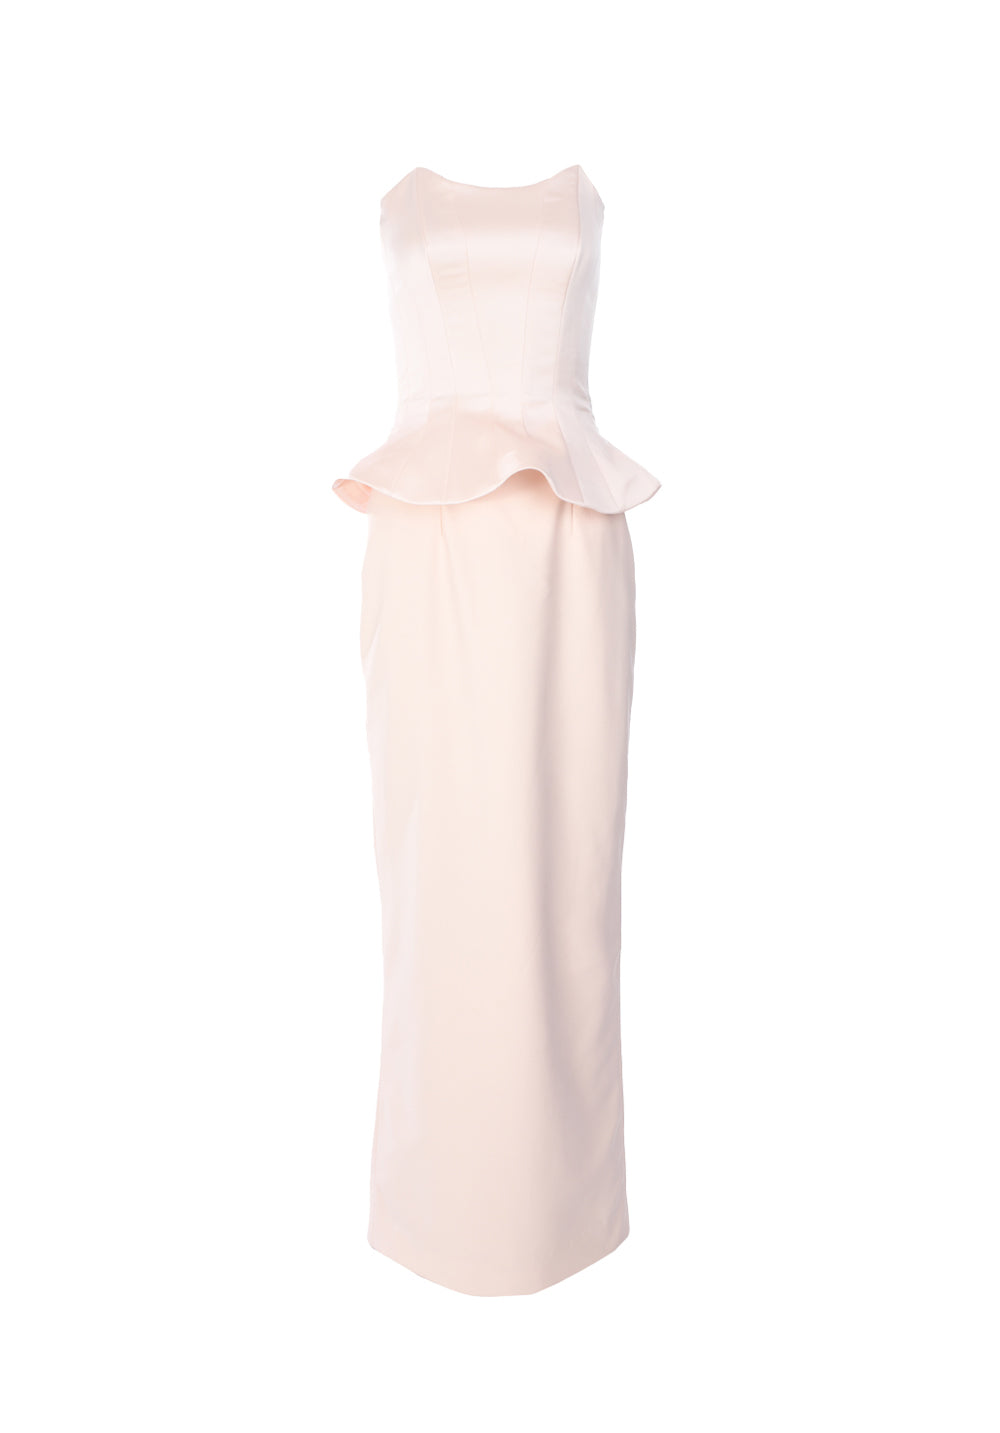 BAZZA ALZOUMAN peplum-waist strapless gown